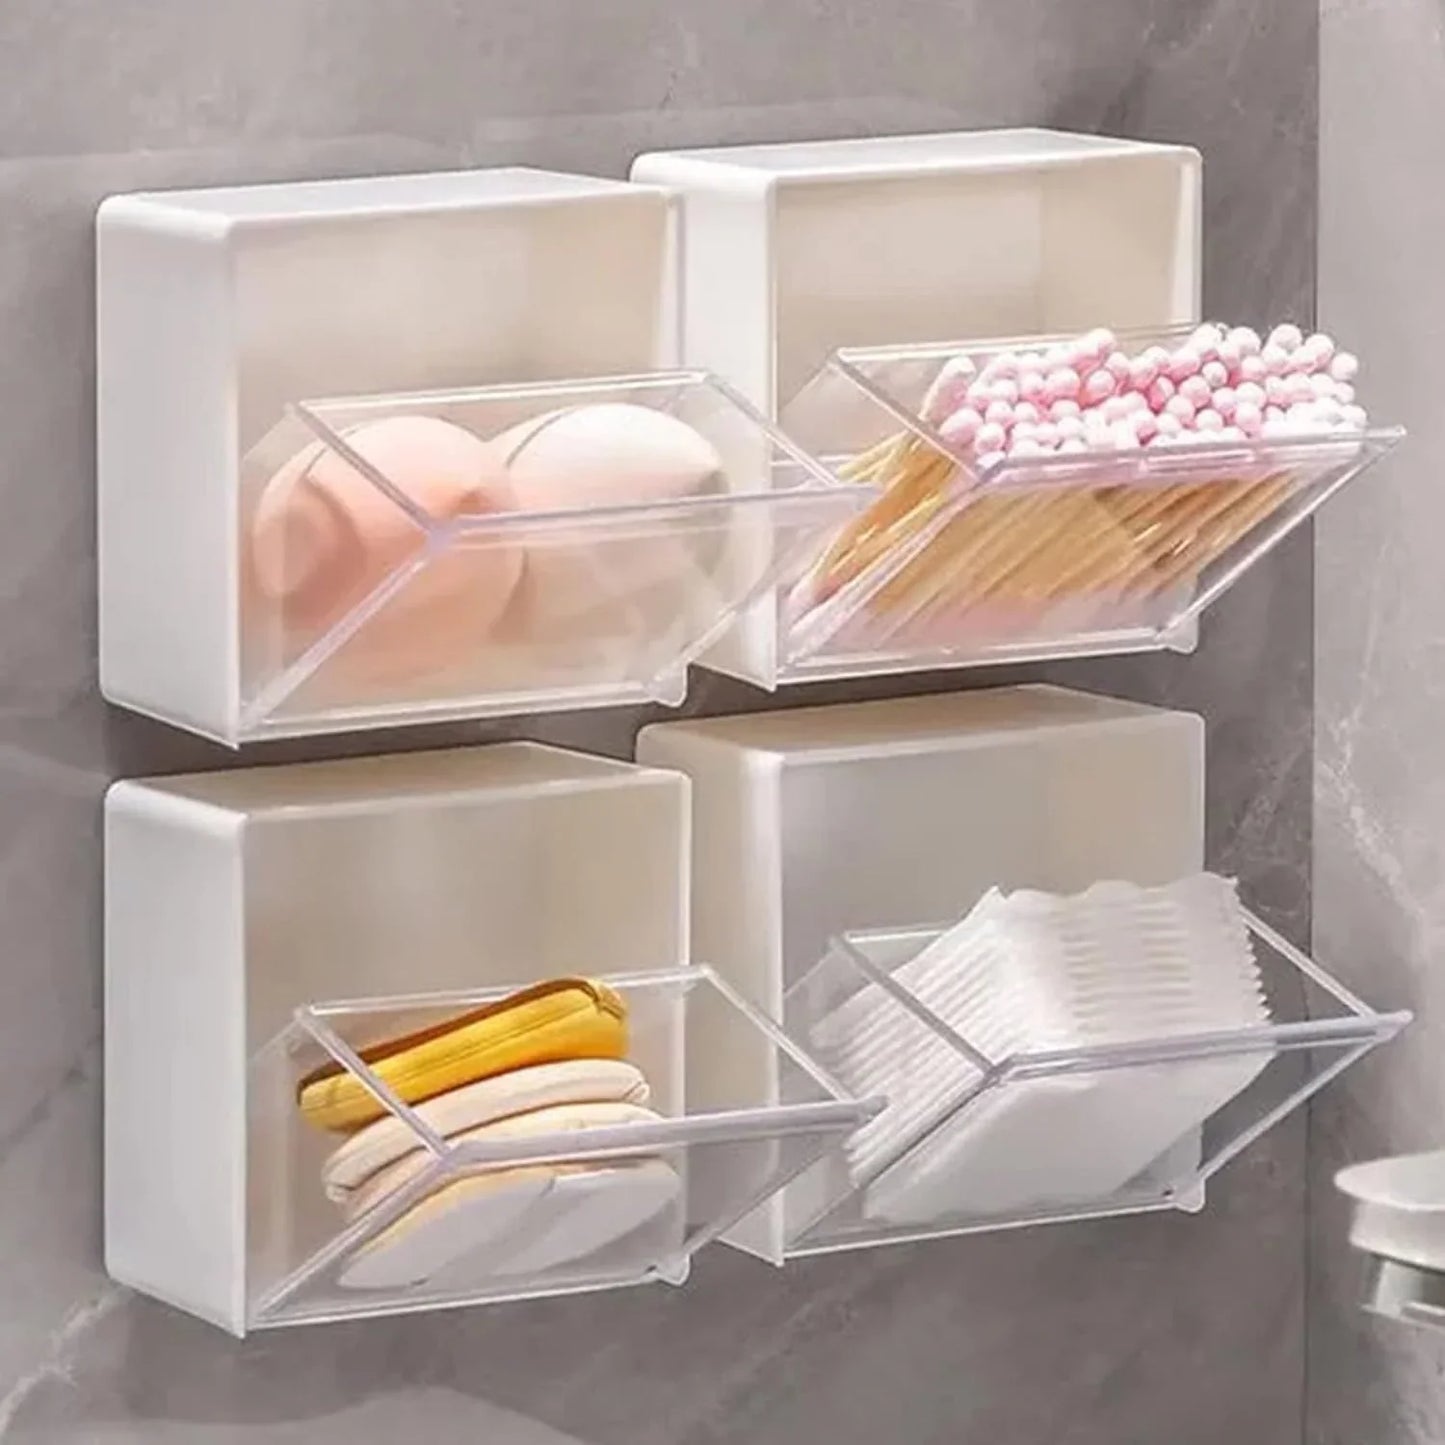 Kitchen Organizer Bathroom Accessories Wall Mounted Clamshell Design Plastic Storage Box Cotton Swab Storage Holder